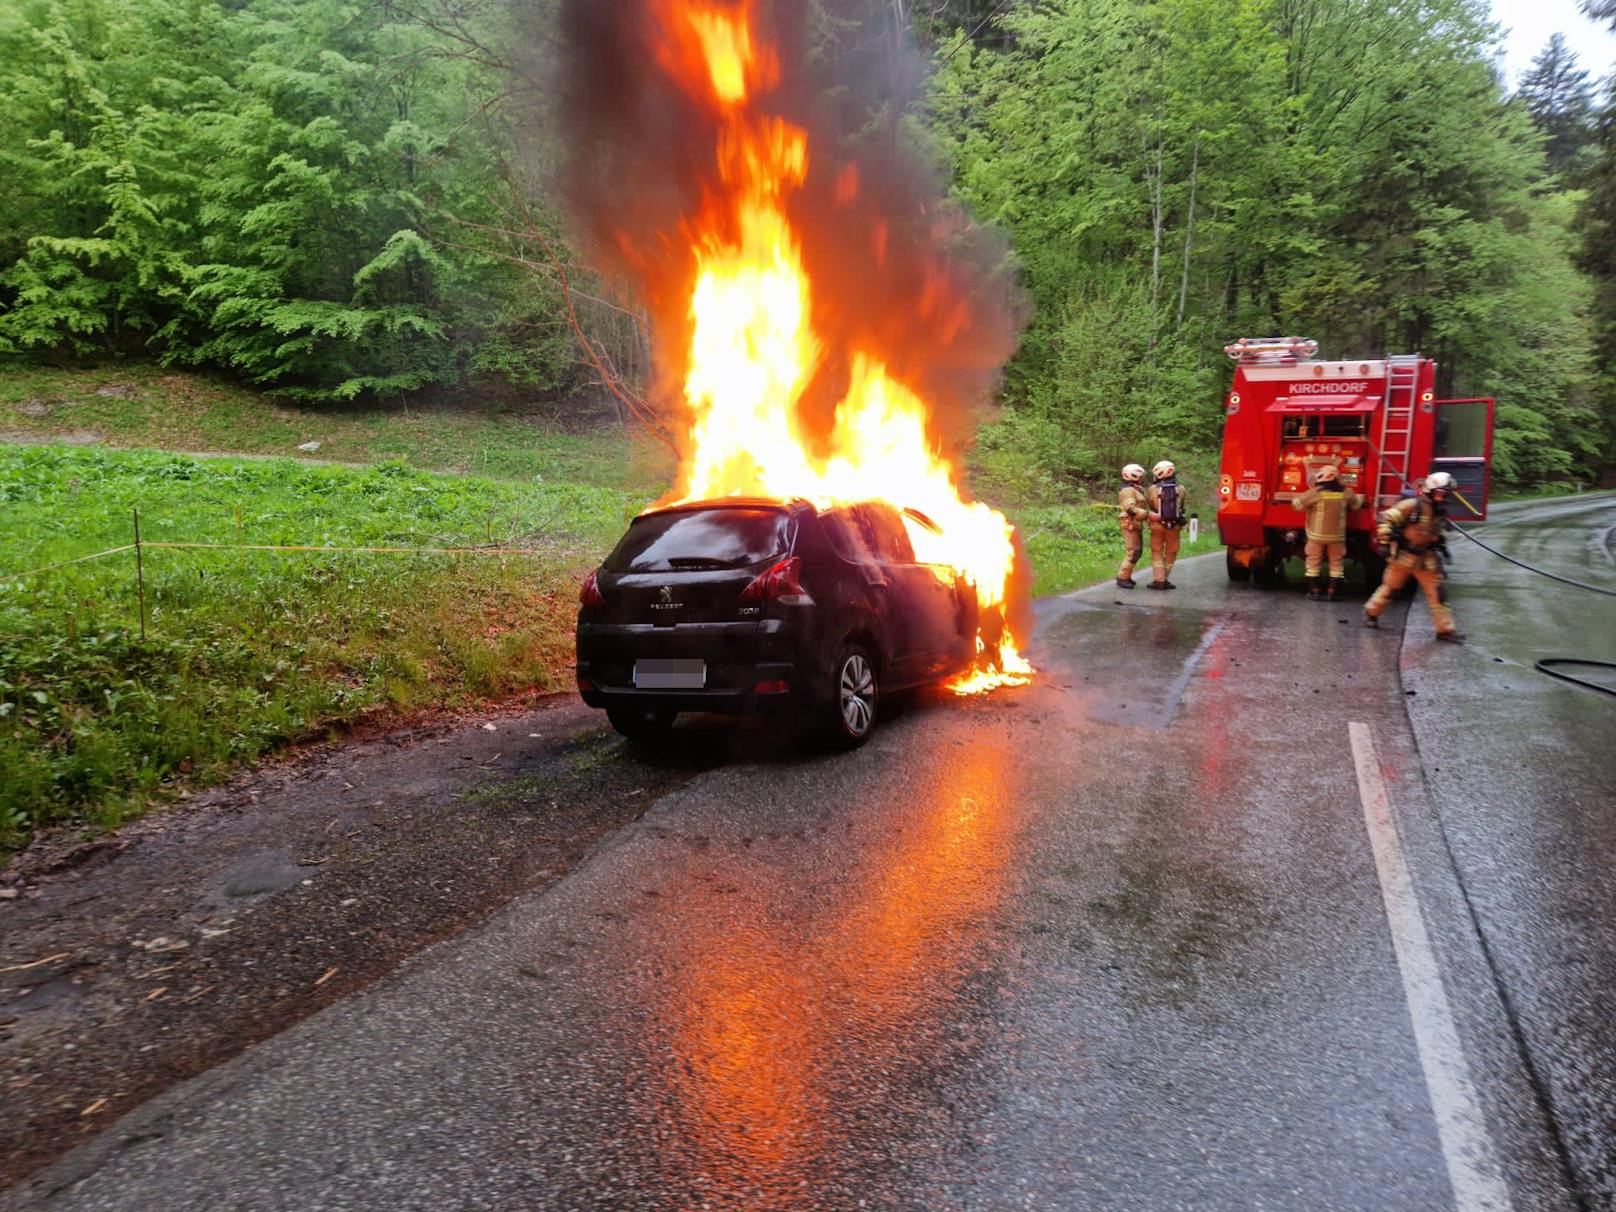 Am 14. Mai gegen 19:20 Uhr kam es auf der B 176 im Gemeindegebiet von Kirchdorf in Tirol zu einem Feuerwehreinsatz nach einem Fahrzeugbrand.